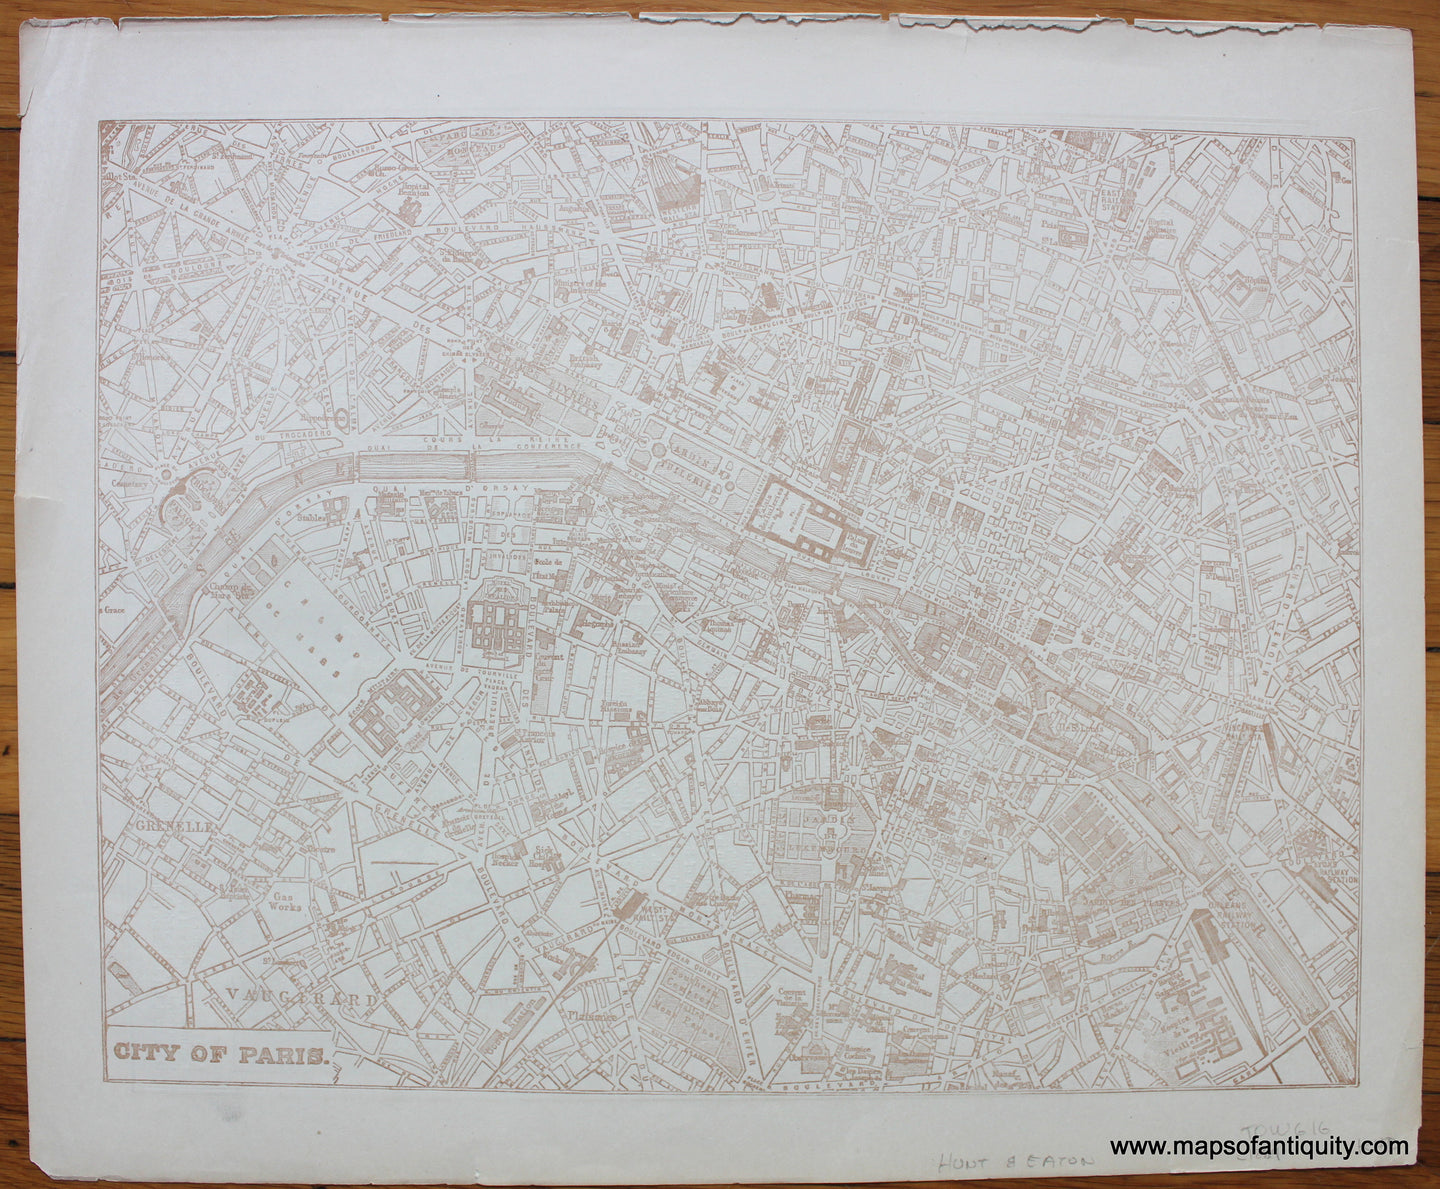 Antique-Printed-Map-City-of-Paris-c.-1889-Hunt-&-Eaton-Paris-1800s-19th-century-Maps-of-Antiquity